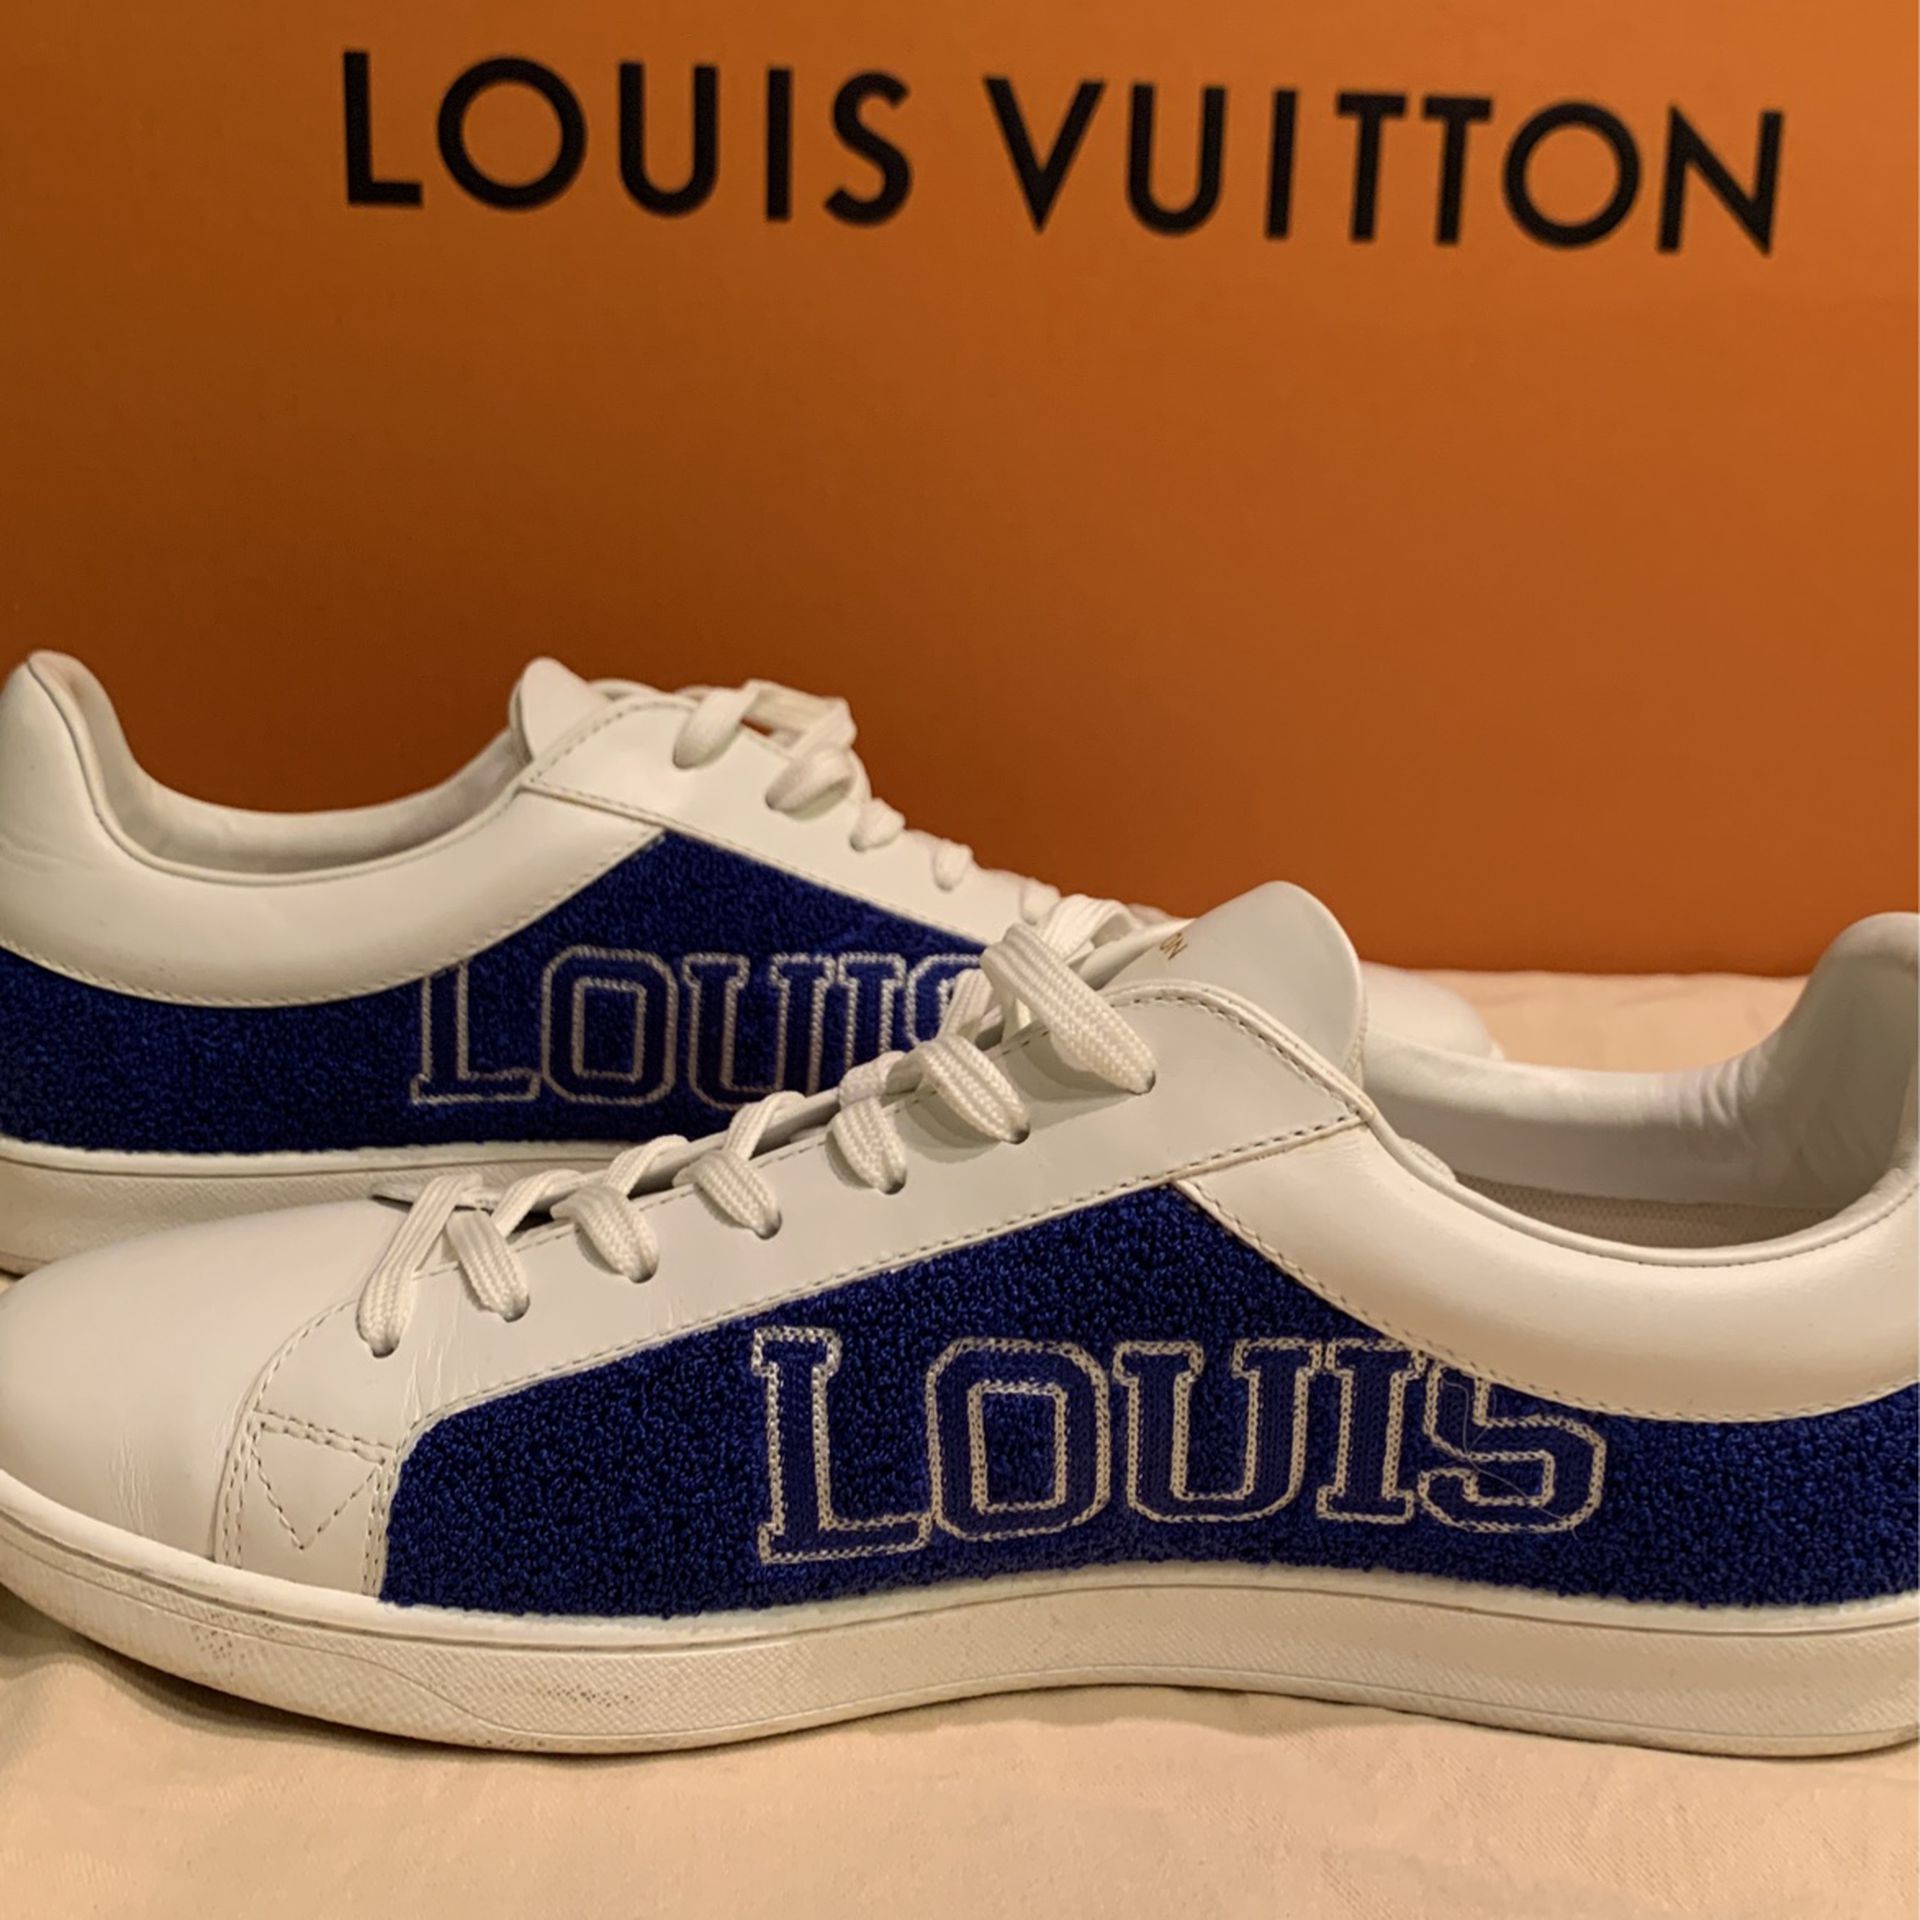 LOUIS VUITTON Mens Sneakers ORIGINAL for Sale in Yorba Linda, CA